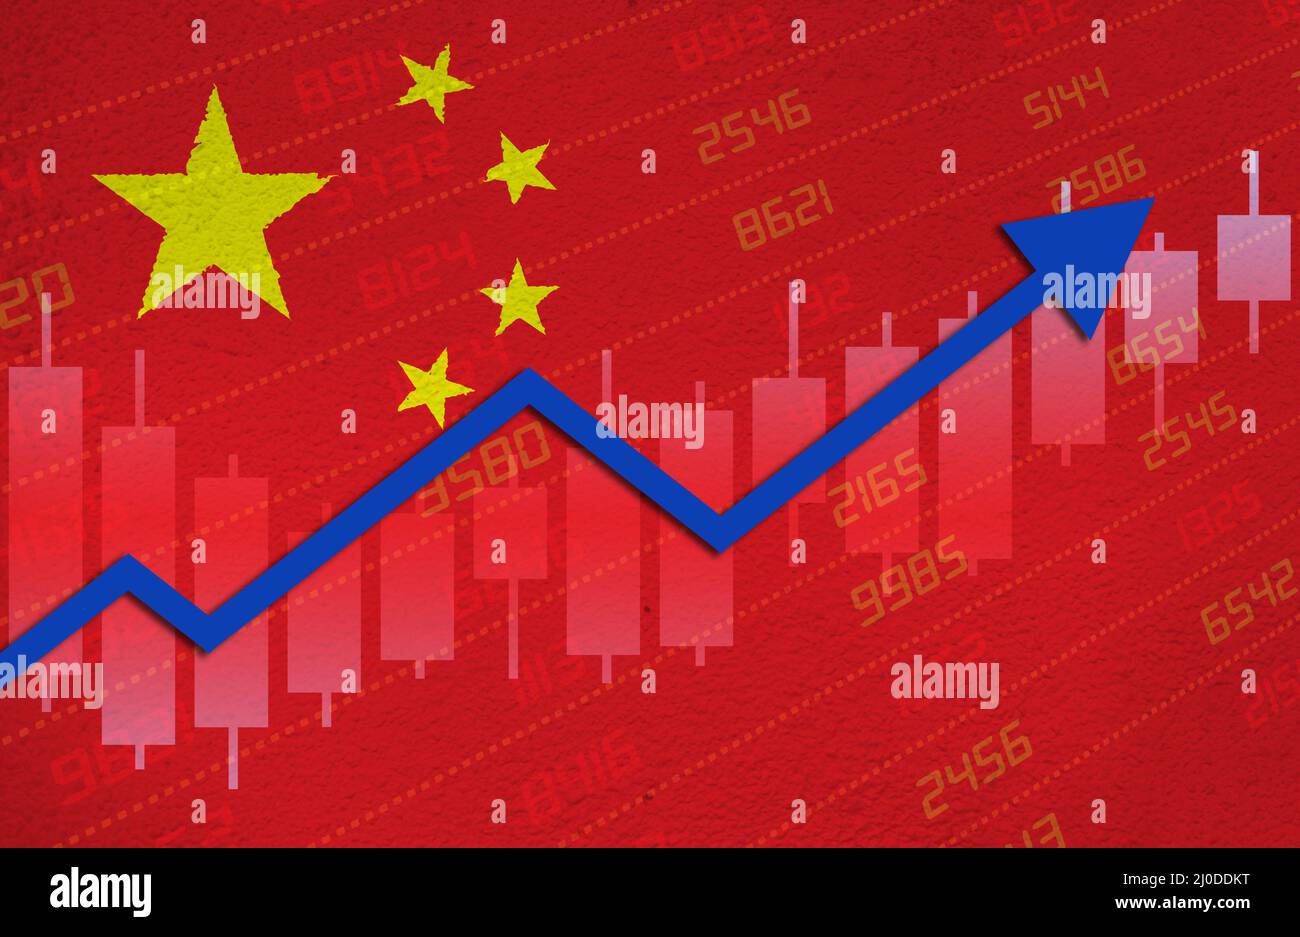 Reprise économique avec une flèche vers le haut du graphique boursier en territoire positif sur le drapeau chinois peint sur le mur. Reprise des marchés financiers et financiers Banque D'Images